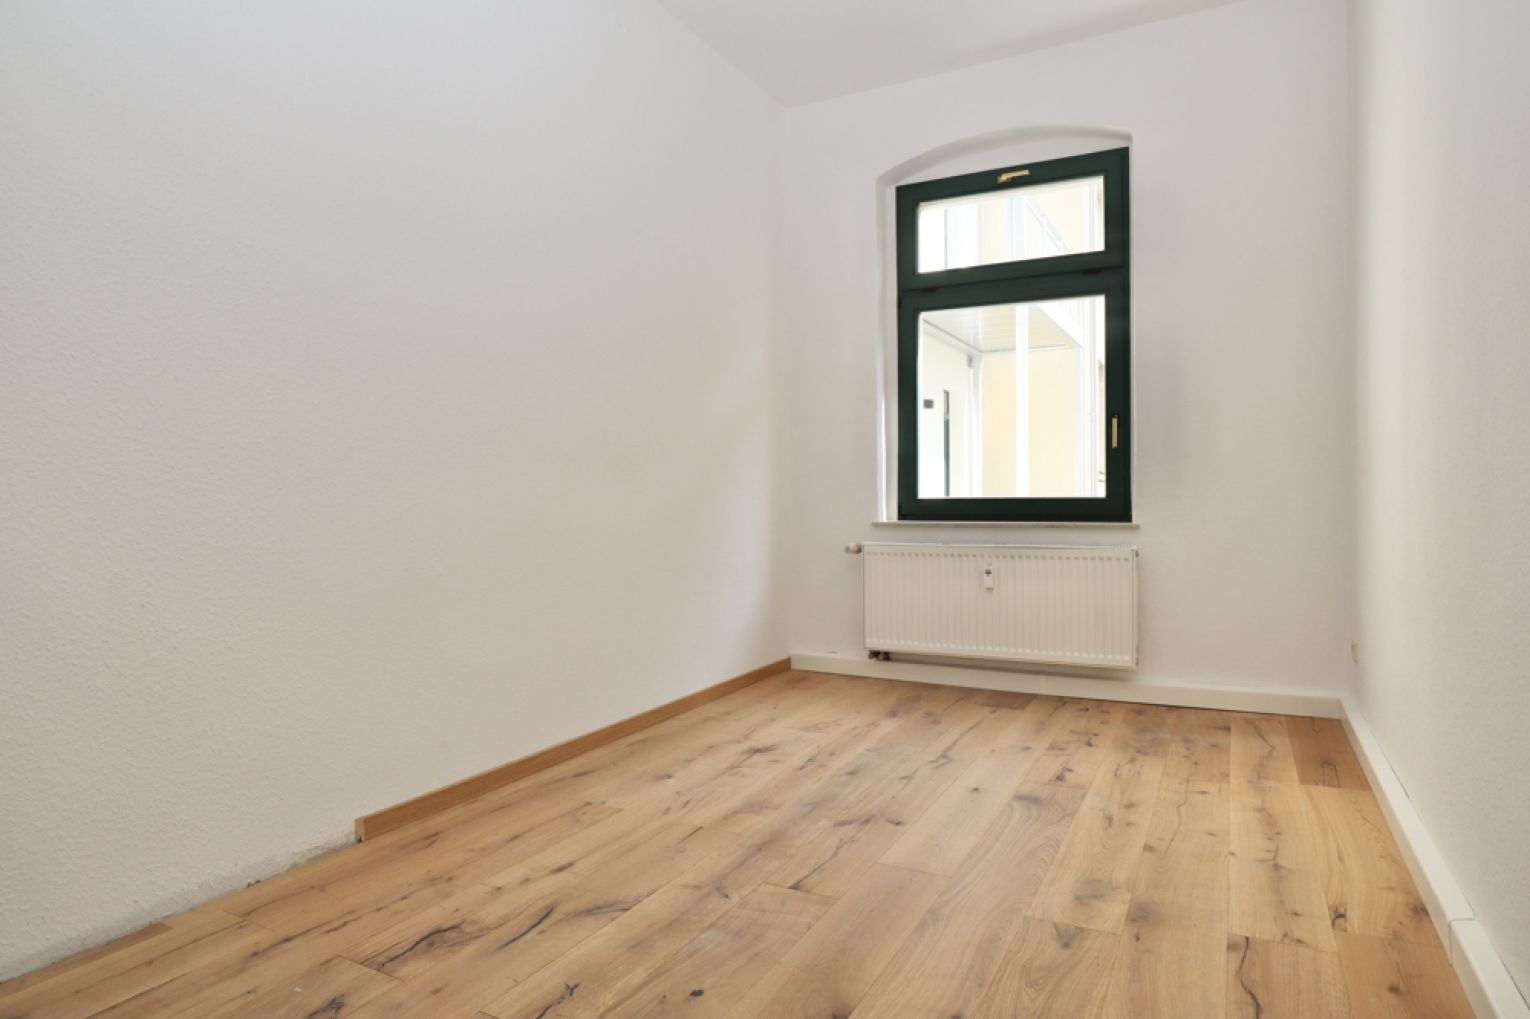 Hilbersdorf • modern • 3-Zimmer Wohnung • neu saniert • Tageslichtbad • Chemnitz • jetzt anrufen